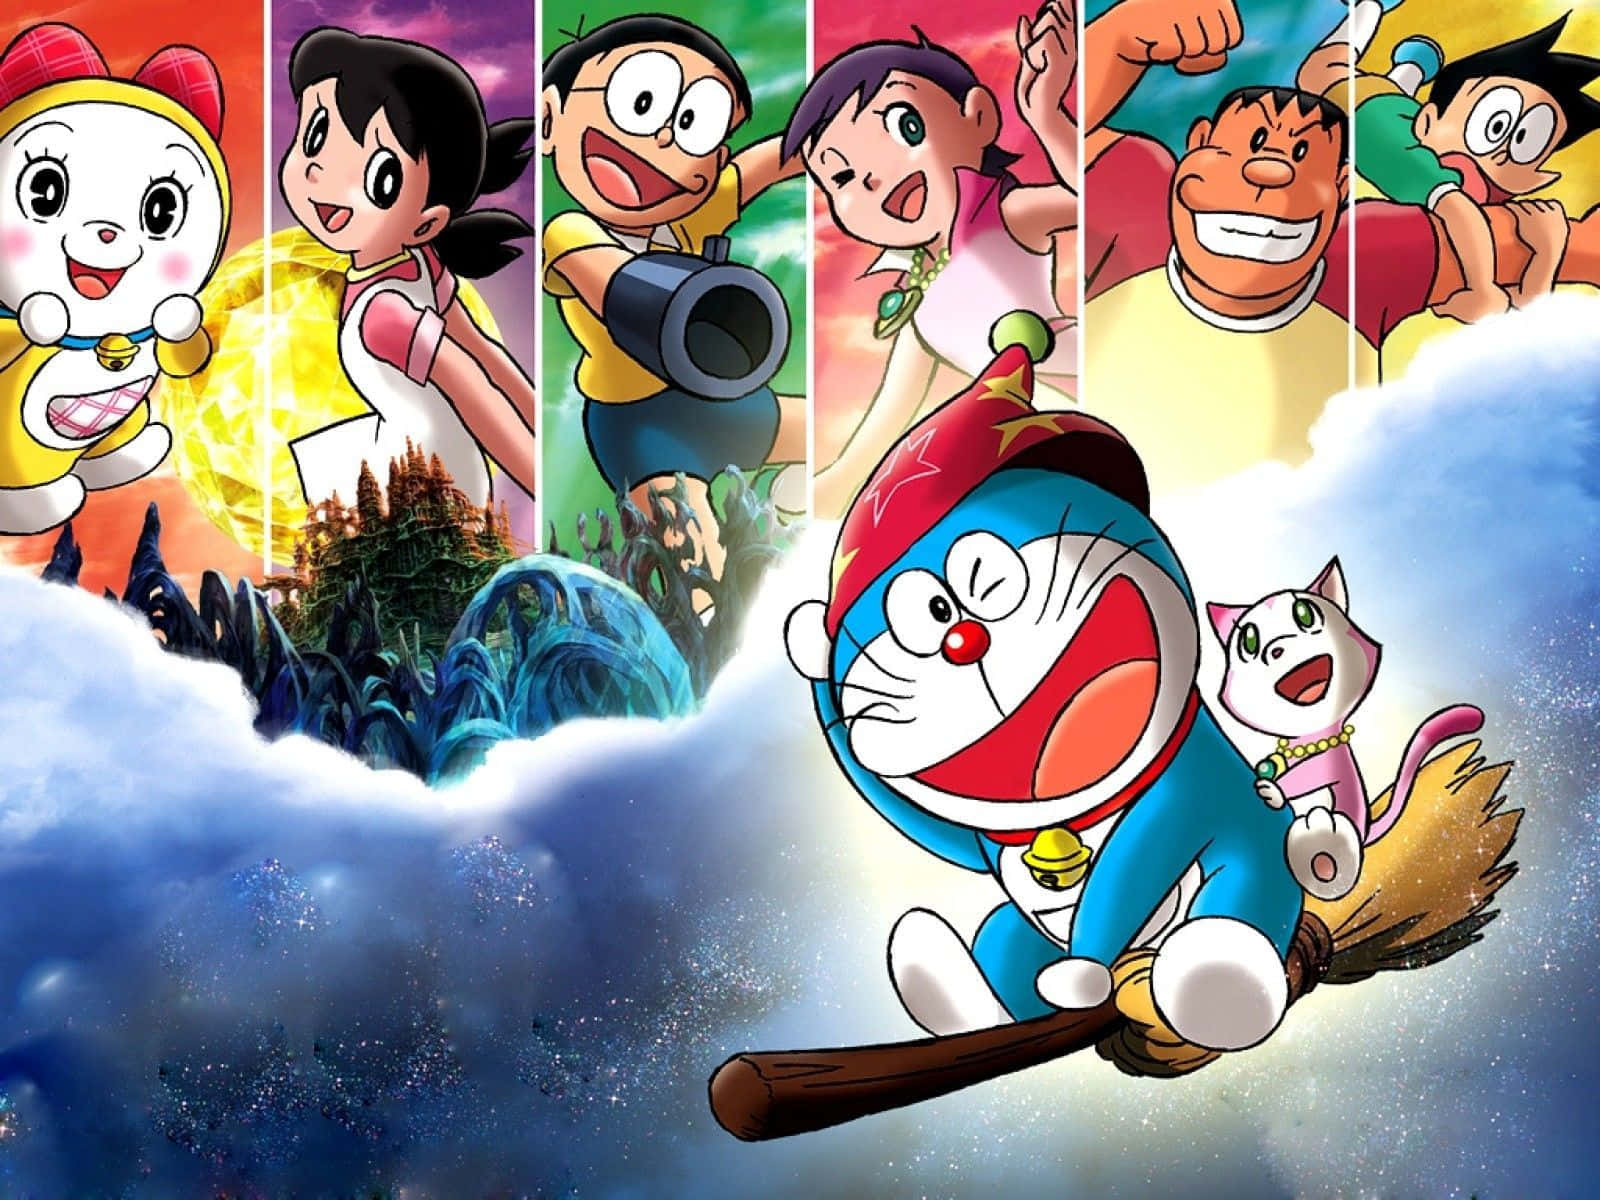 Doraemonbygger En Fästning Med Sina Vänner.